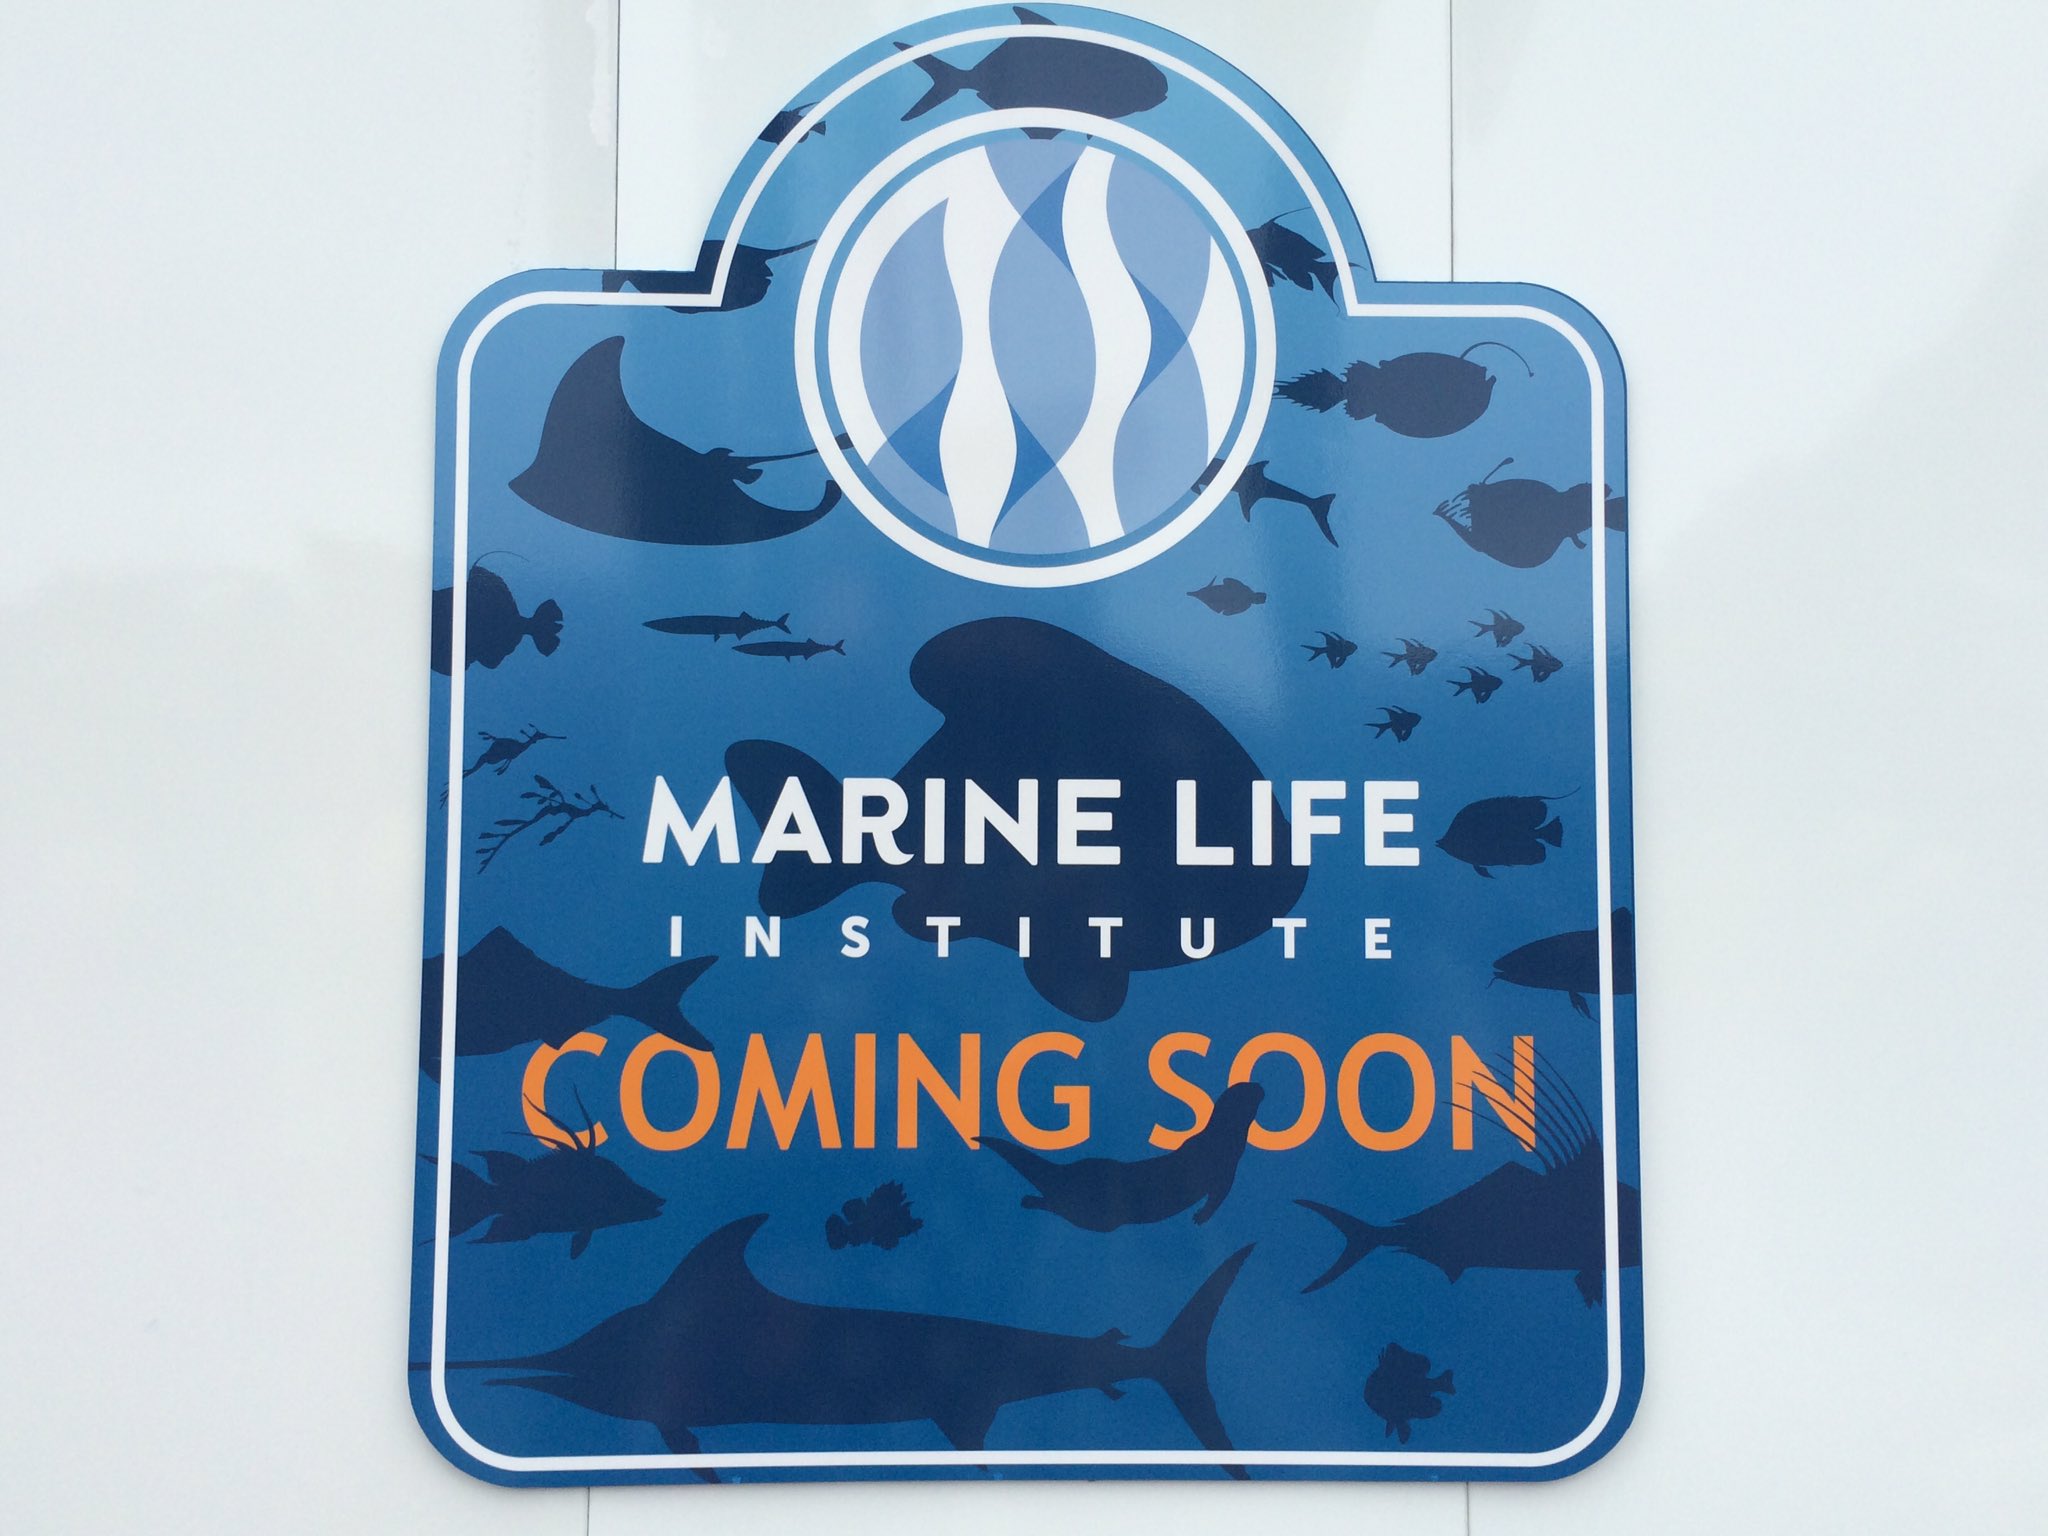 きせしょう 映画 ファインディング ドリー と ニモ フレンズ シーライダー の施設 海洋生物研究所 Marine Life Institute Mli のpc版壁紙ができたよ 2 3枚目が元ネタ まだ存在してない施設のだけどほしいひといる 今度スマホ版も作ろっかな